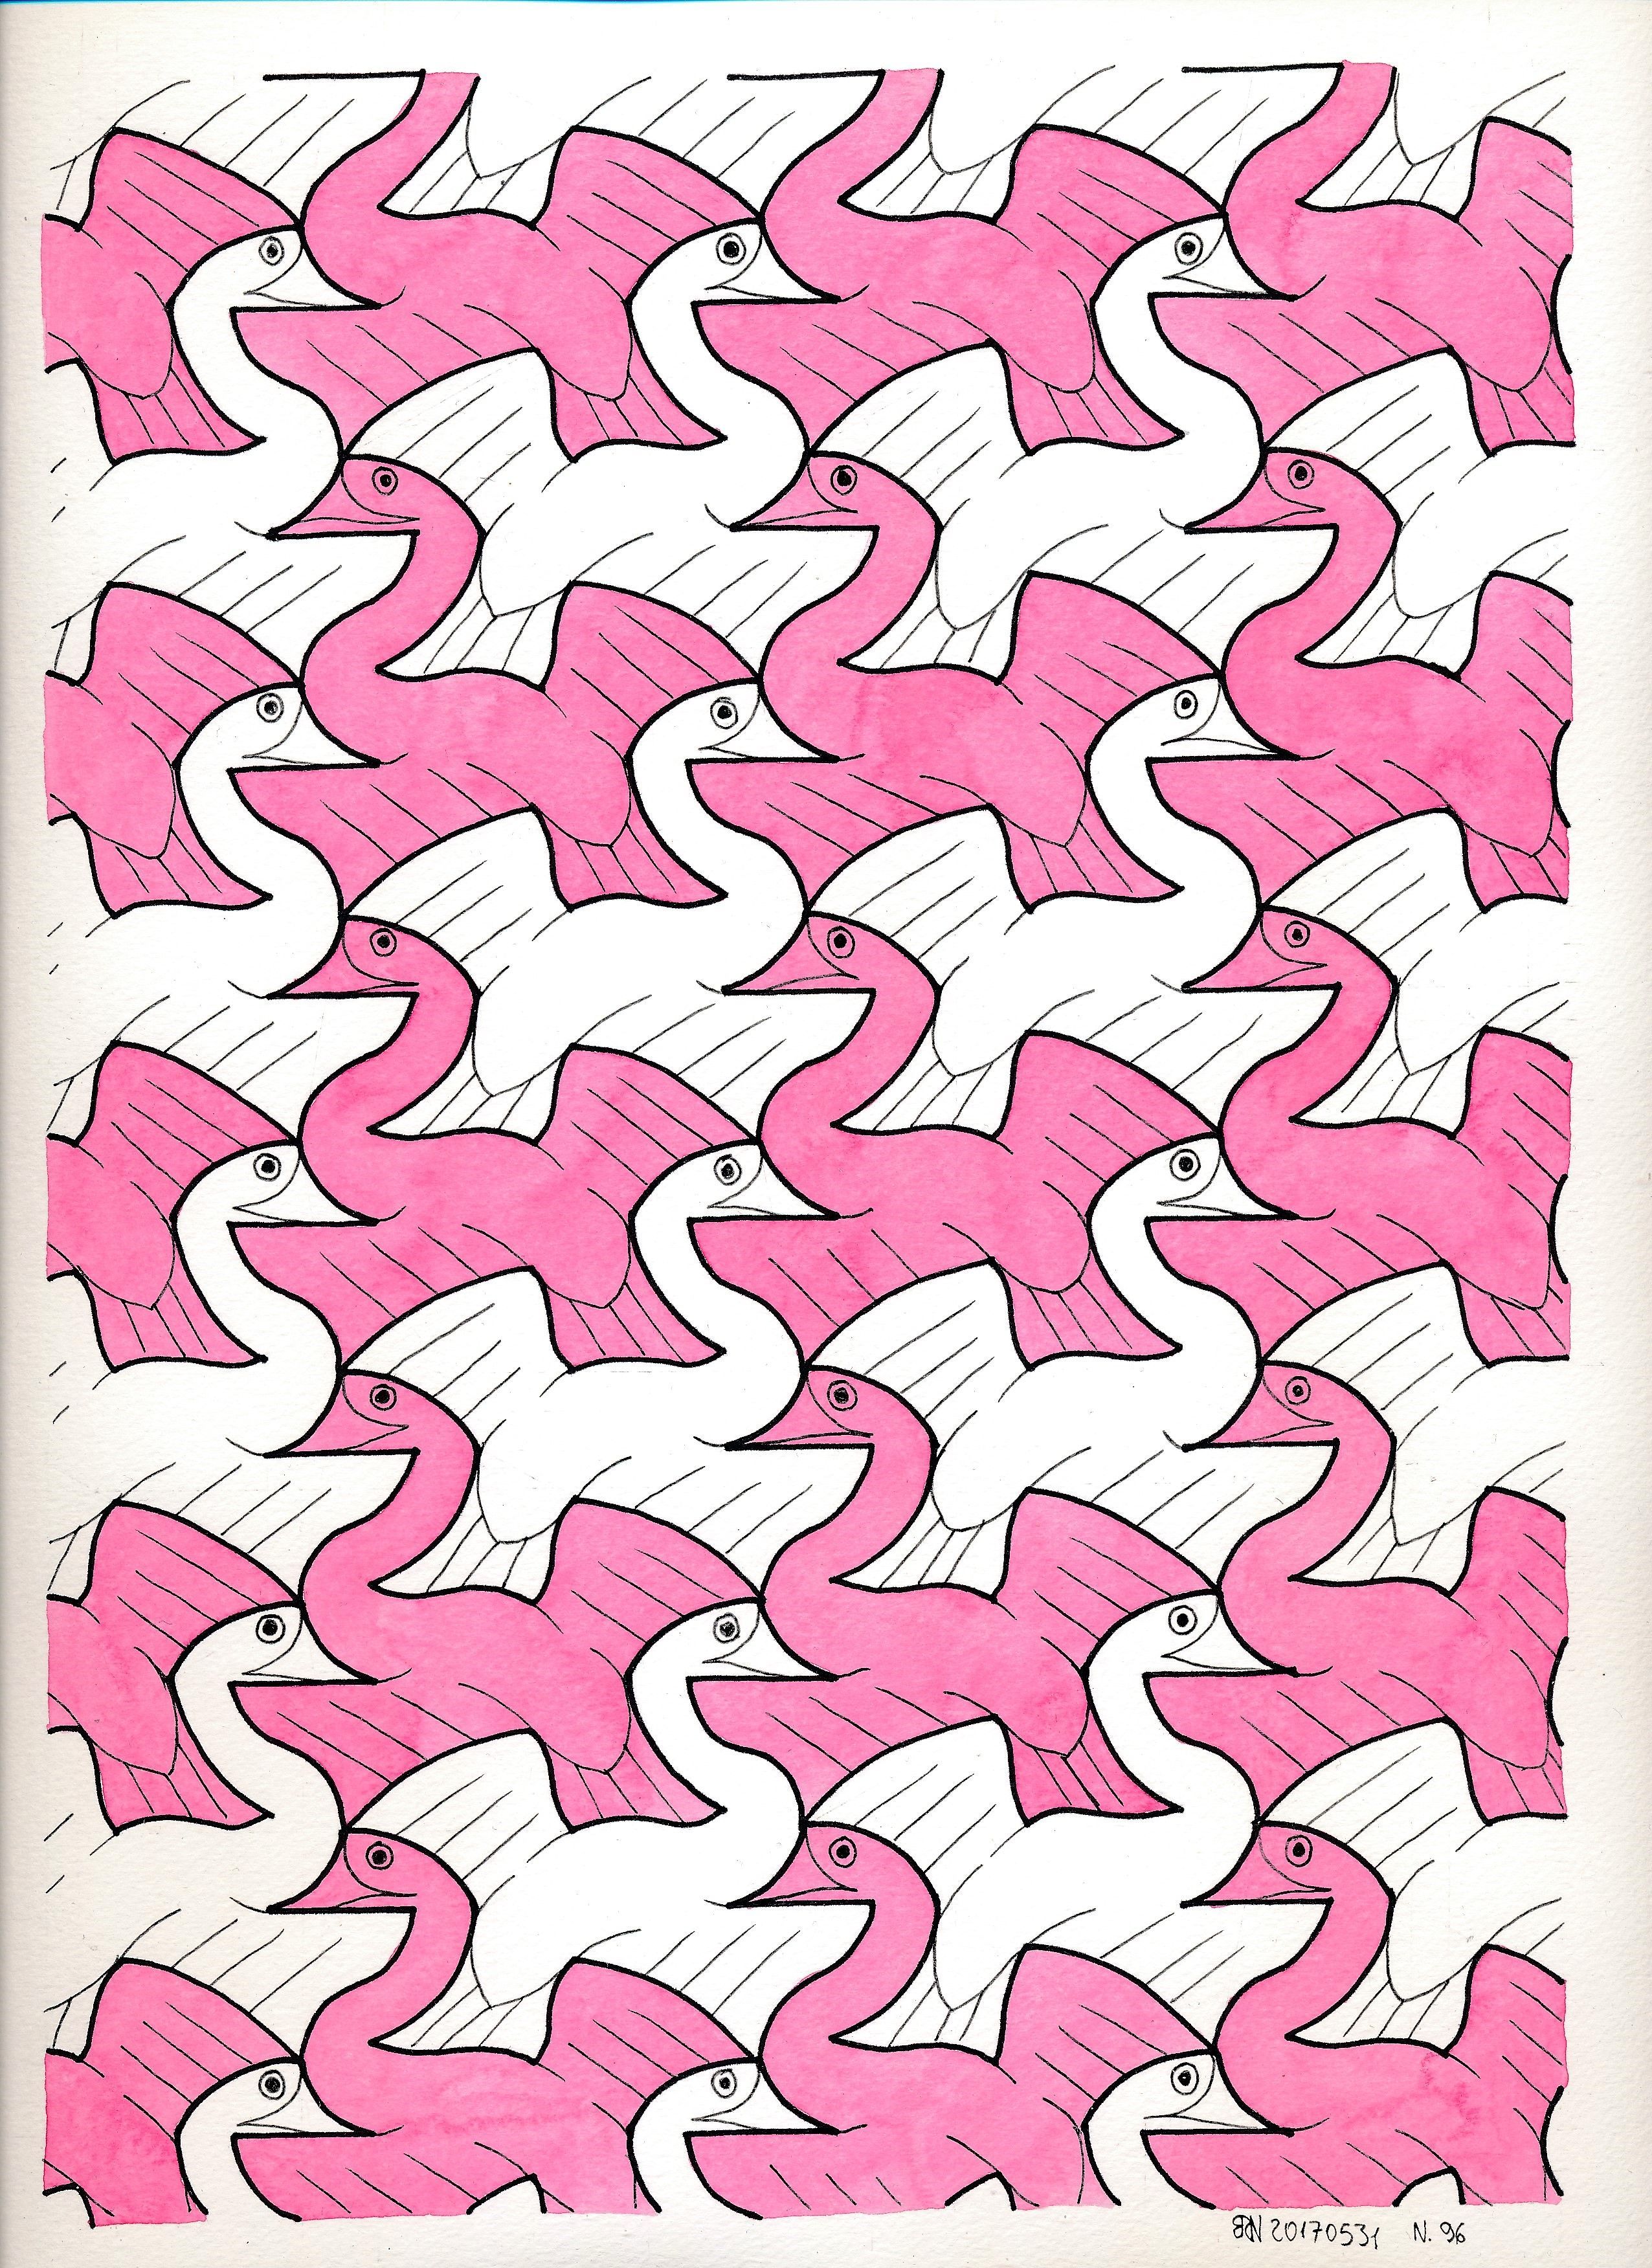 MC Escher nr 96 #tessellation #tiling #handmade #wallpaper #symmetry